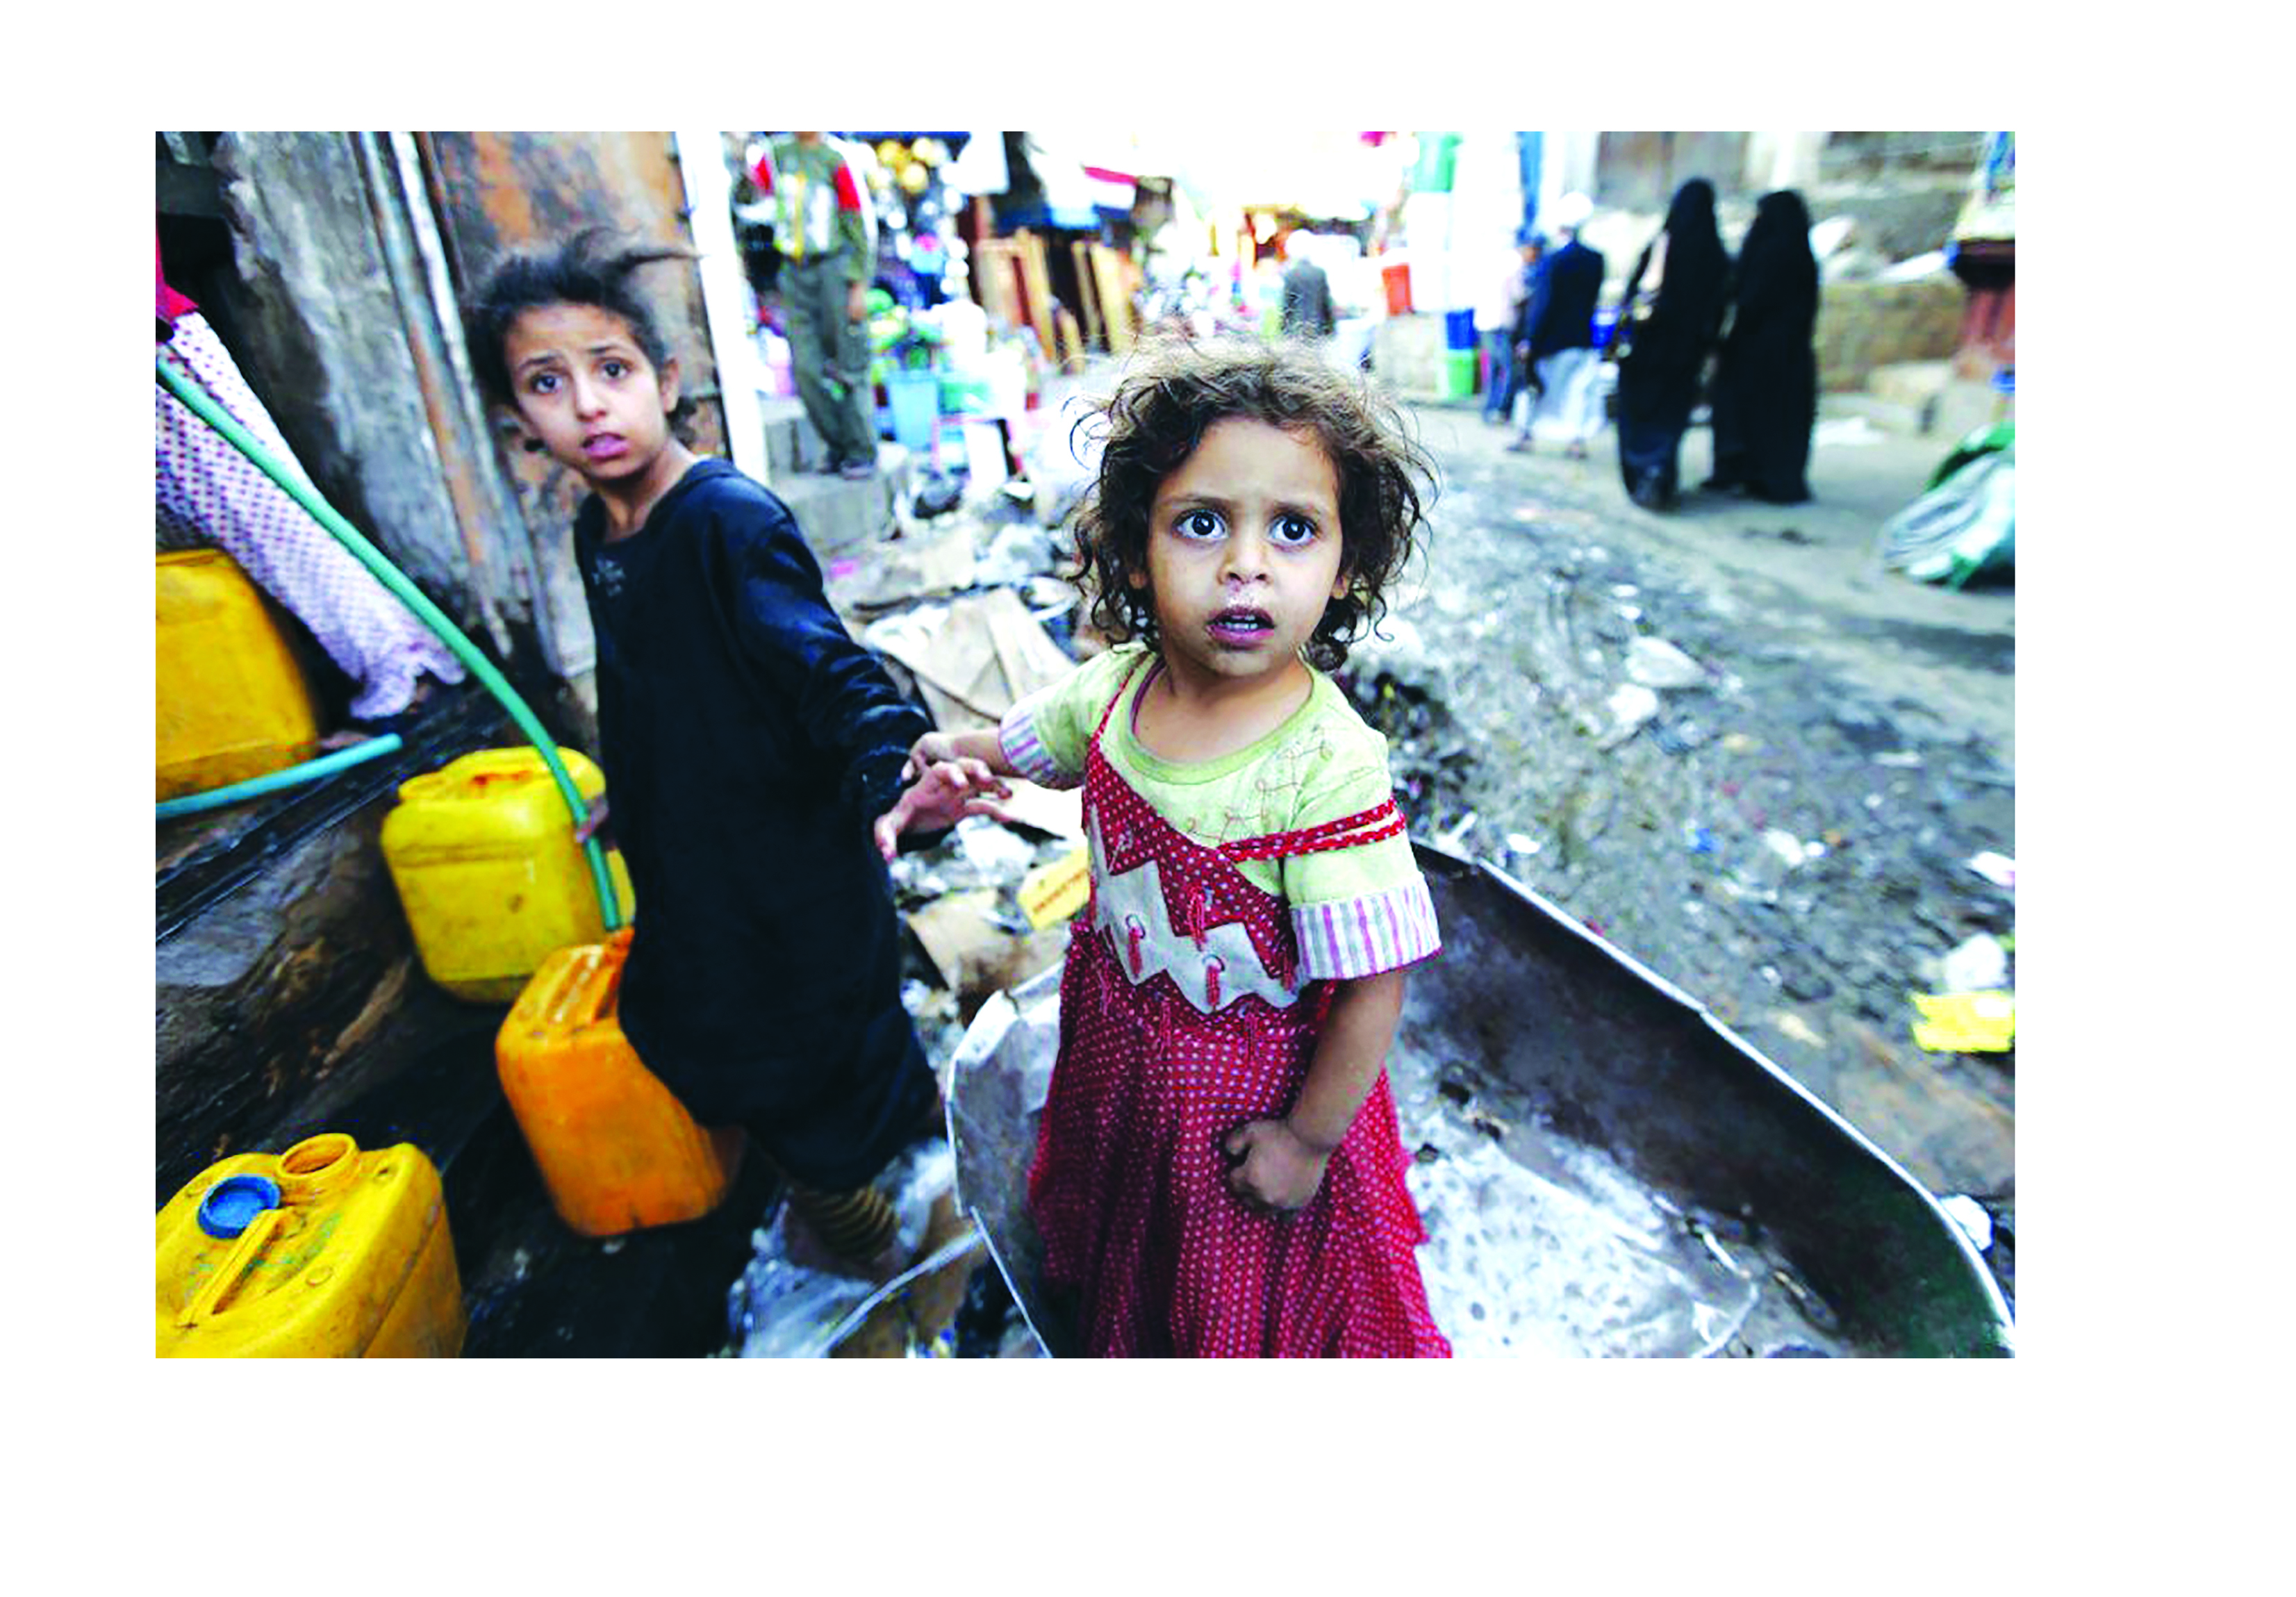 ООН: «Гибель детей в Йемене неприемлемаи не может быть оправдана ничем»